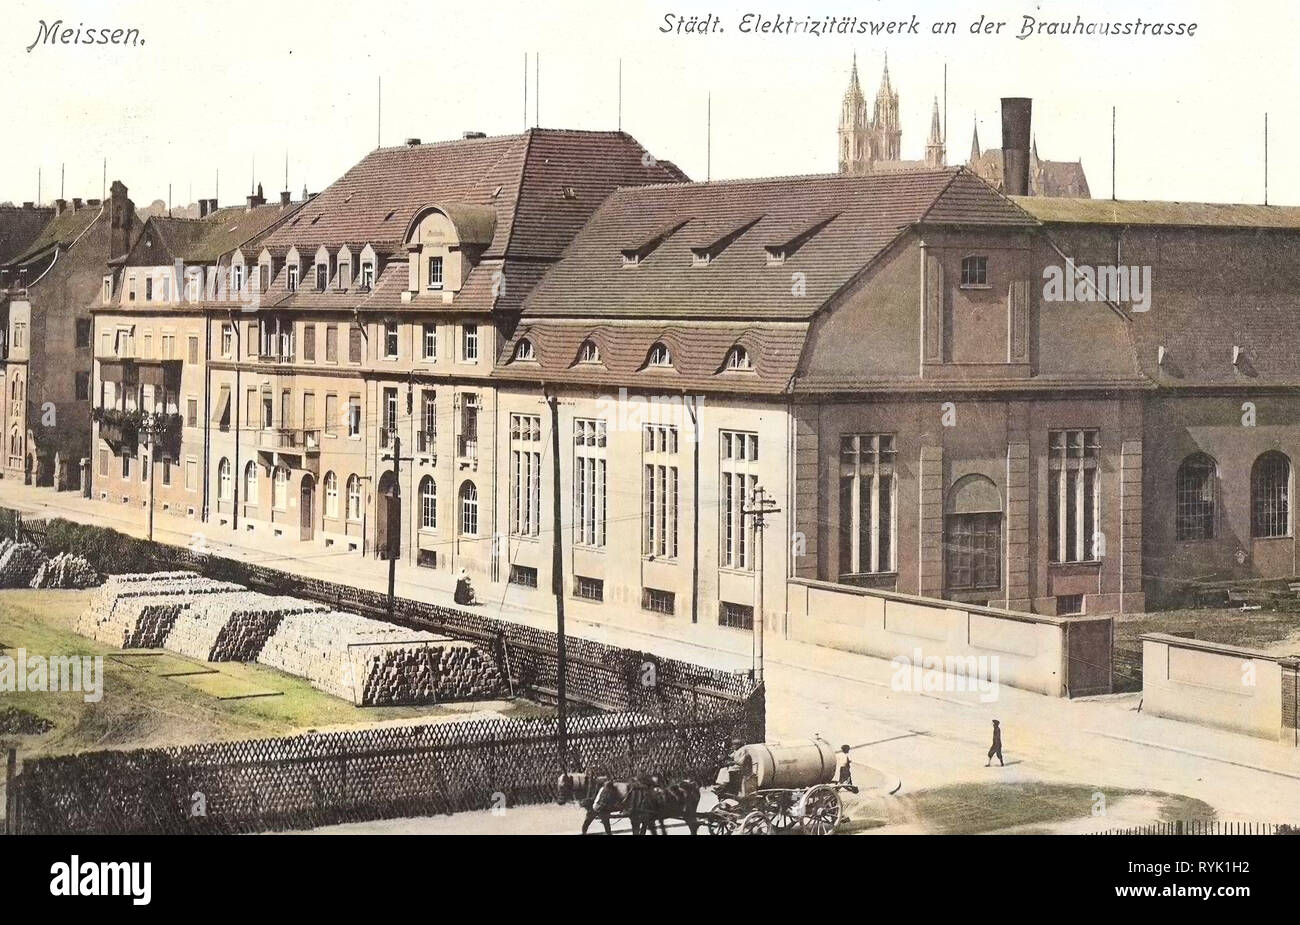 Breweries in Saxony, Transport of liquid, Buildings in Meißen, Meissen Cathedral, Picket fences in Germany, 1913, Meißen, Brauhausstraße, Elektrizitätswerk Stock Photo